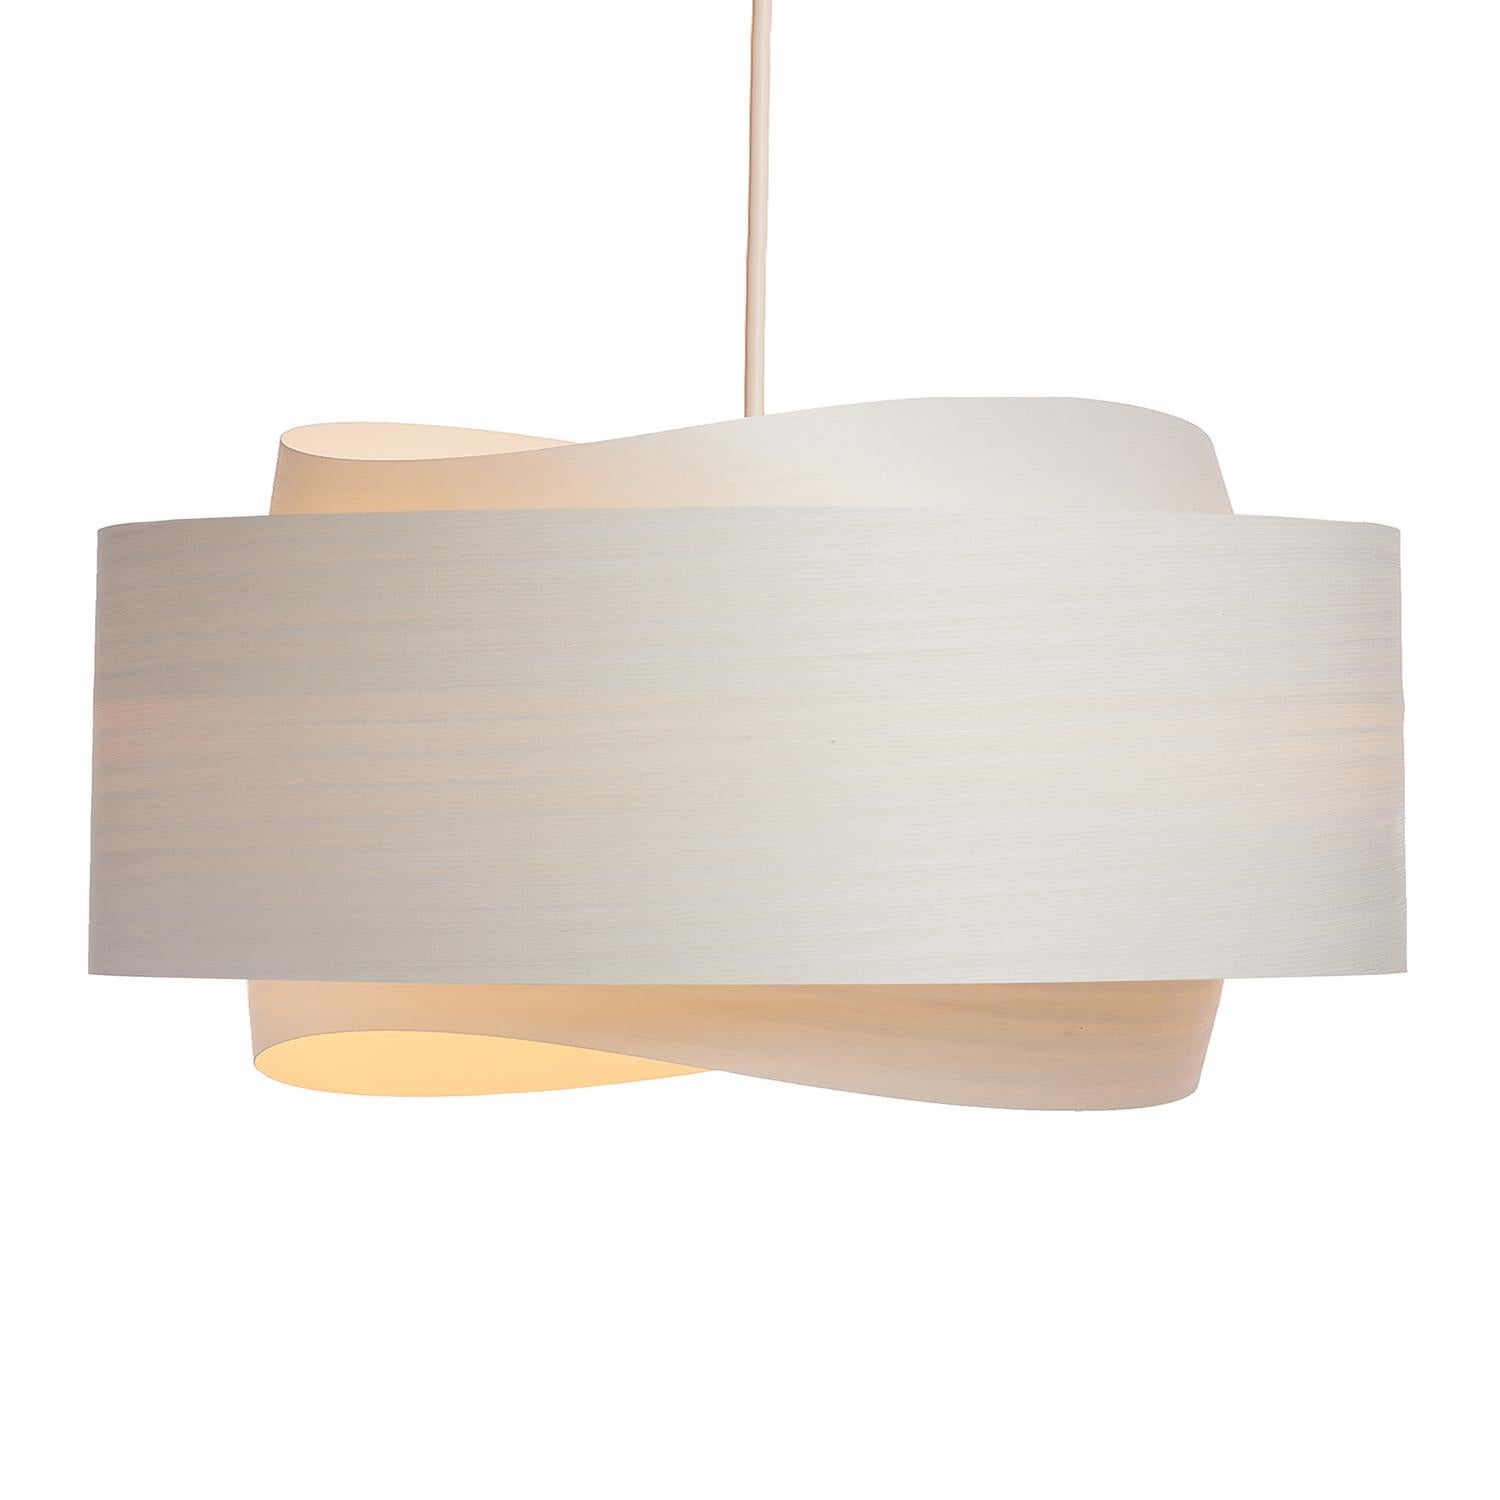 Le luminaire BOWEN est un exemple étonnant de design contemporain du milieu du siècle dernier. Avec sa silhouette minimaliste, ses tons blancs chauds et sa forme unique, cette lampe suspendue ne manquera pas d'ajouter une touche de sophistication à